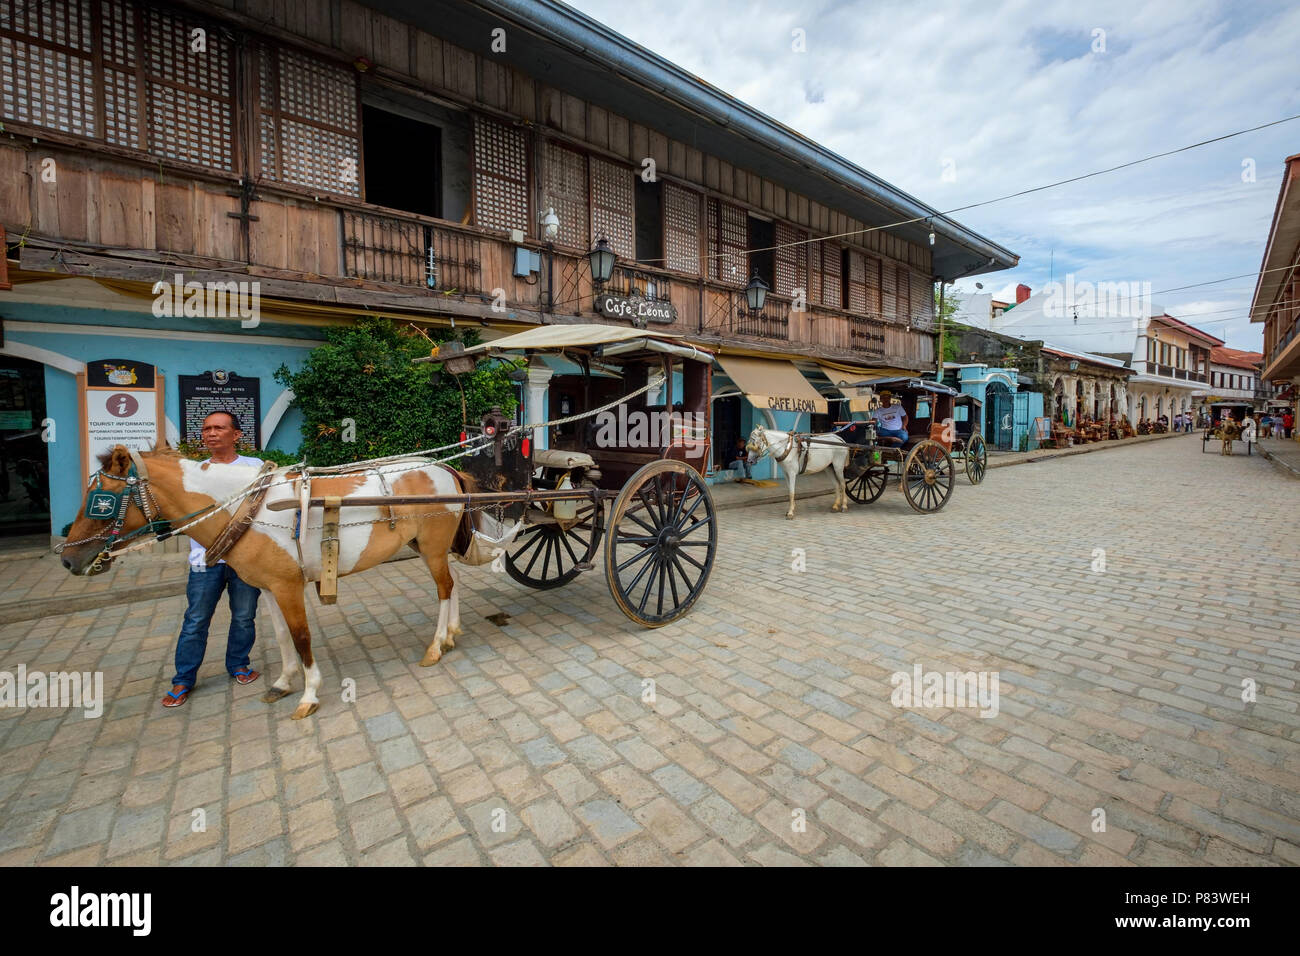 La pittoresque ville coloniale espagnole du 16ème siècle de Vigan aux Philippines avec ses calèches et rues pavées Banque D'Images